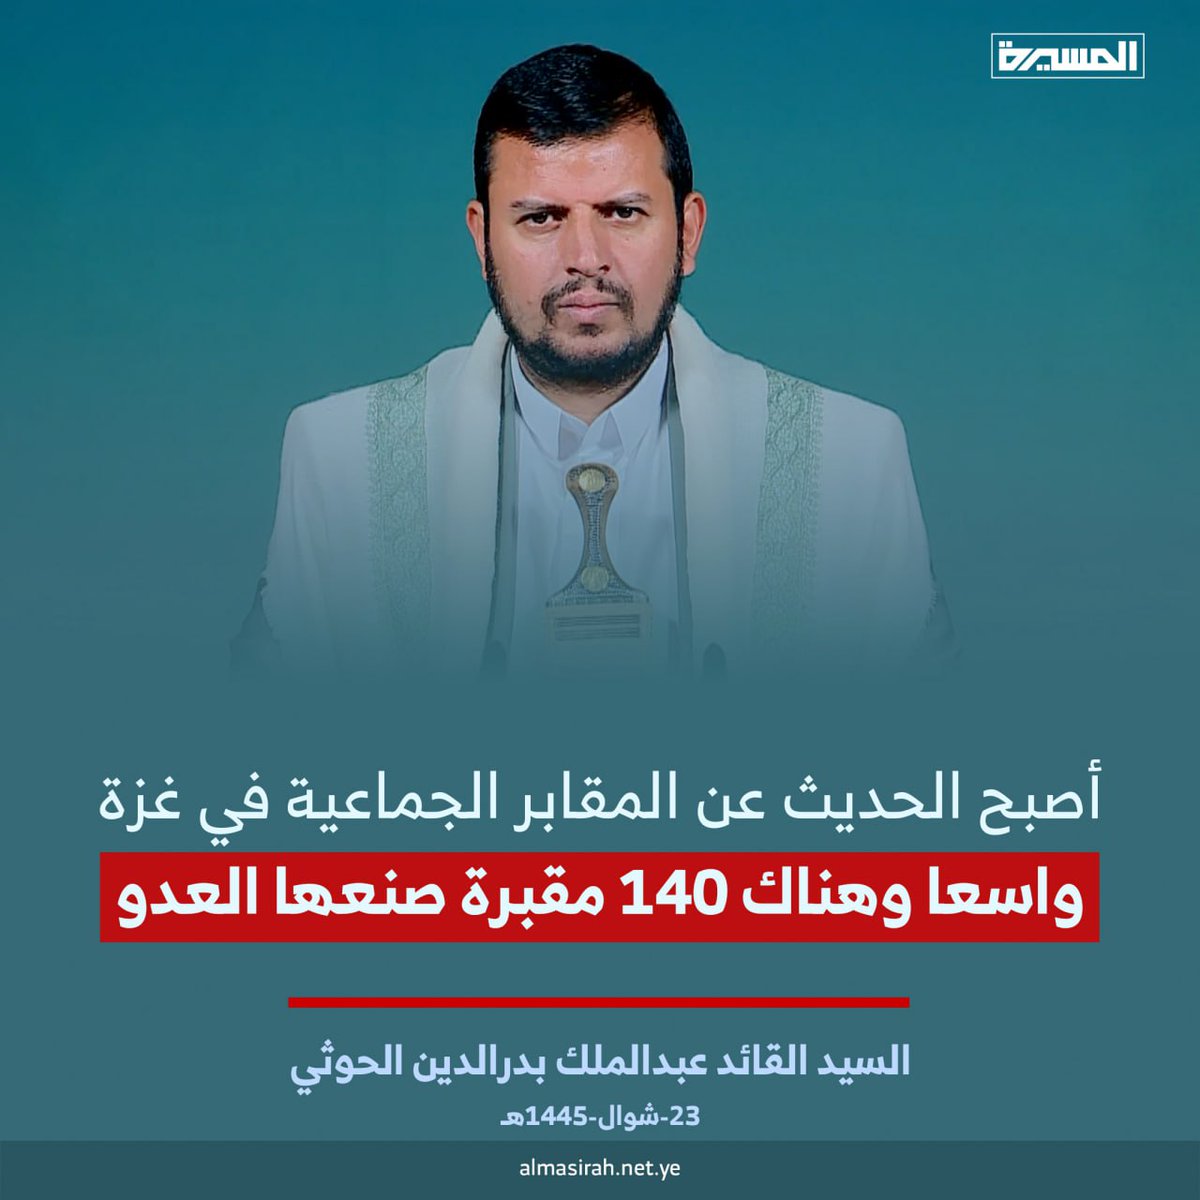 السيد القائد عبدالملك بدر الدين الحوثي: أصبح الحديث عن المقابر الجماعية في غزة واسعا وهناك 140 مقبرة صنعها العدو